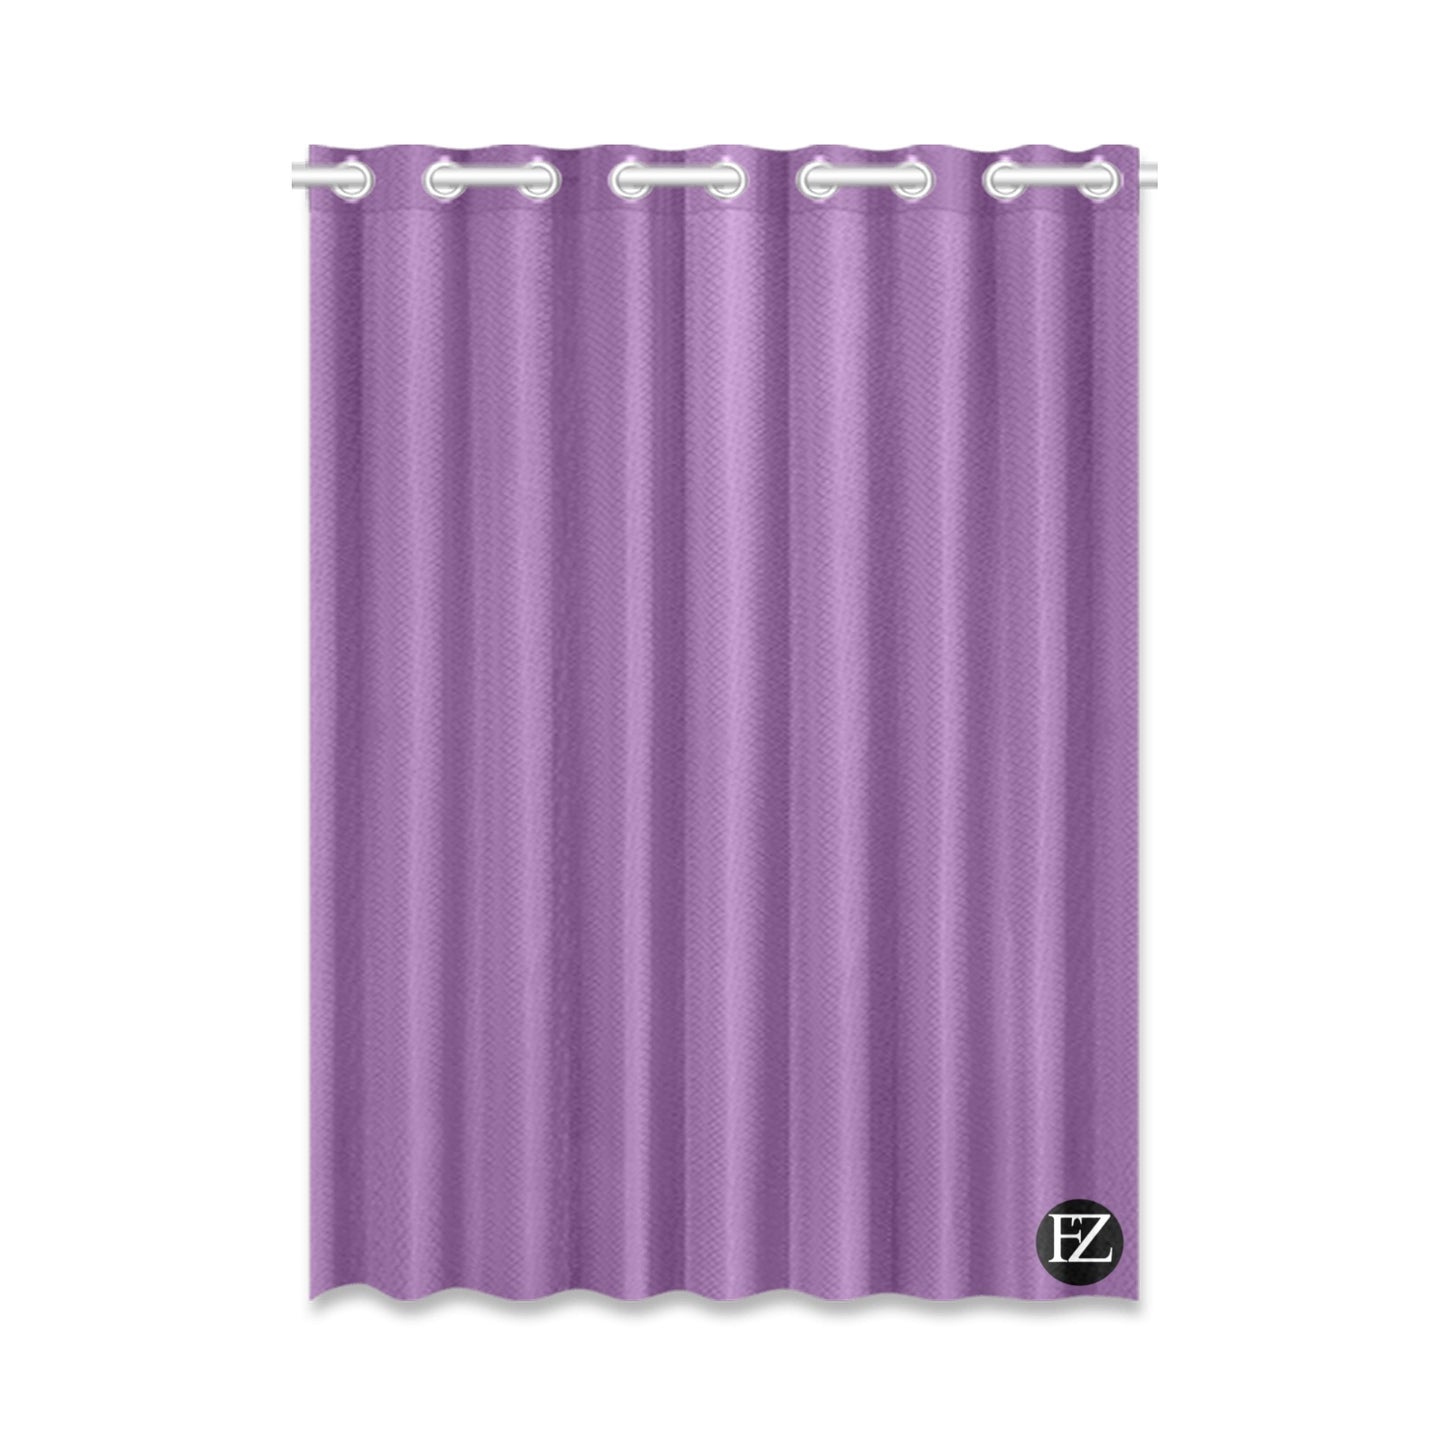 fz window curtain one size / fz room curtains - purple window curtain 52" x 72" (one piece)